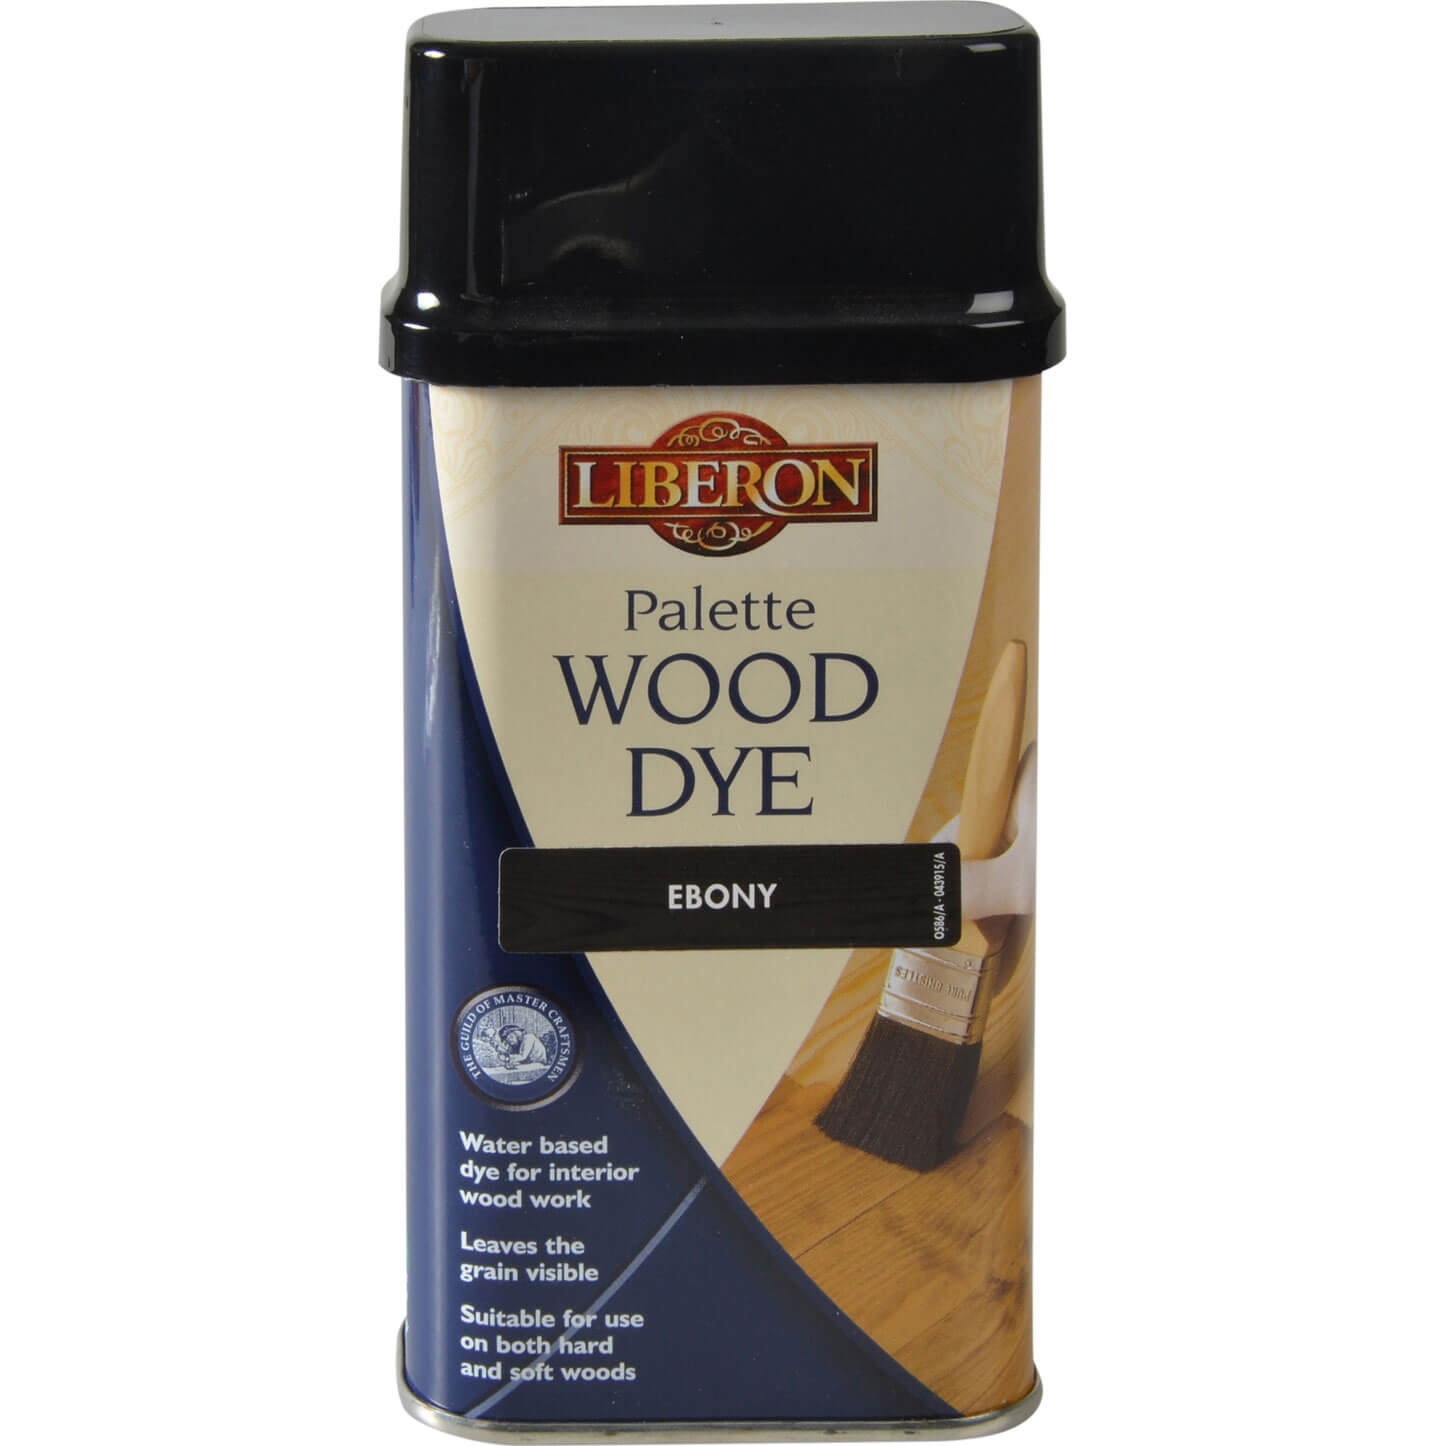 Photos - Varnish Liberon Palette Wood Dye Ebony 250ml 